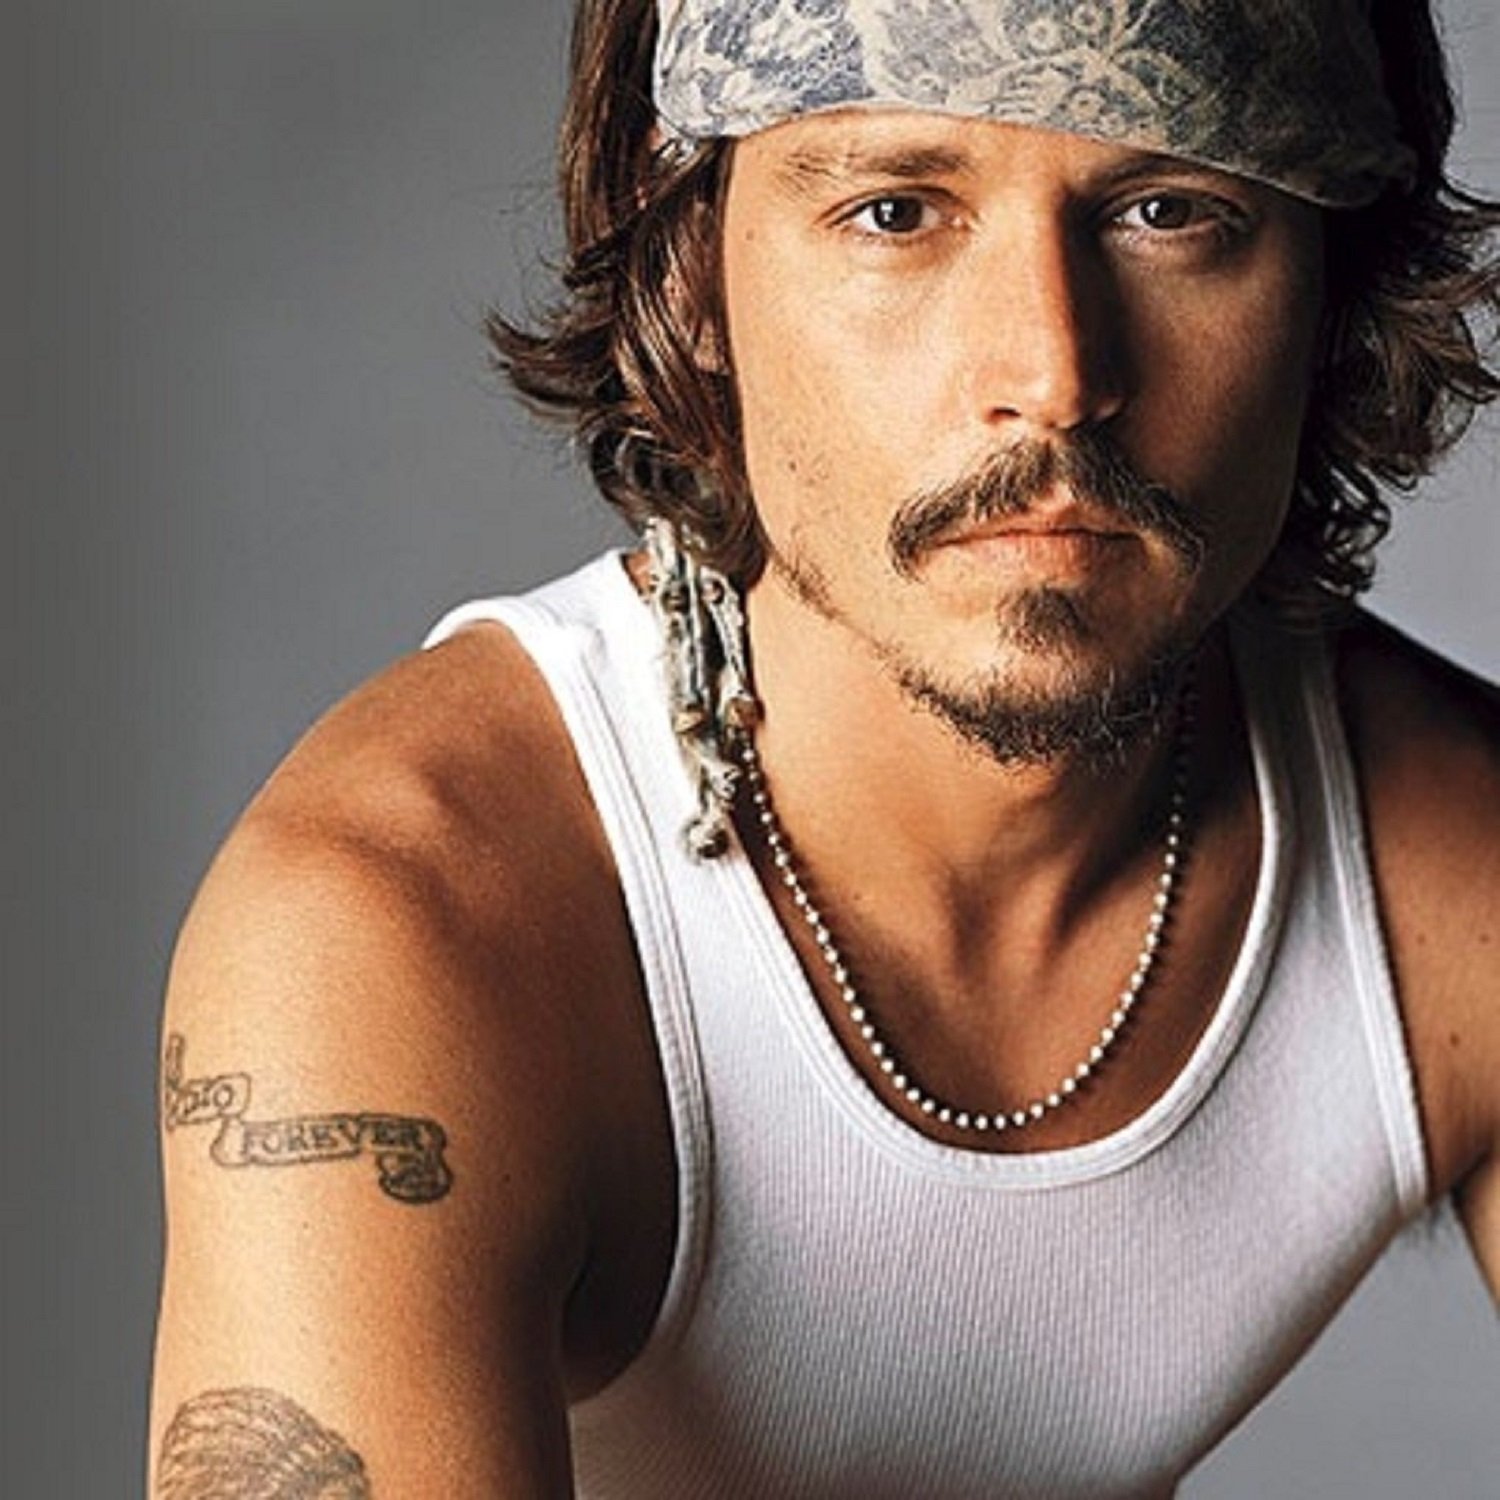 Johnny Depp va exigir un canvi de guió en Piratas del Caribe per no haver de lluitar contra una dona